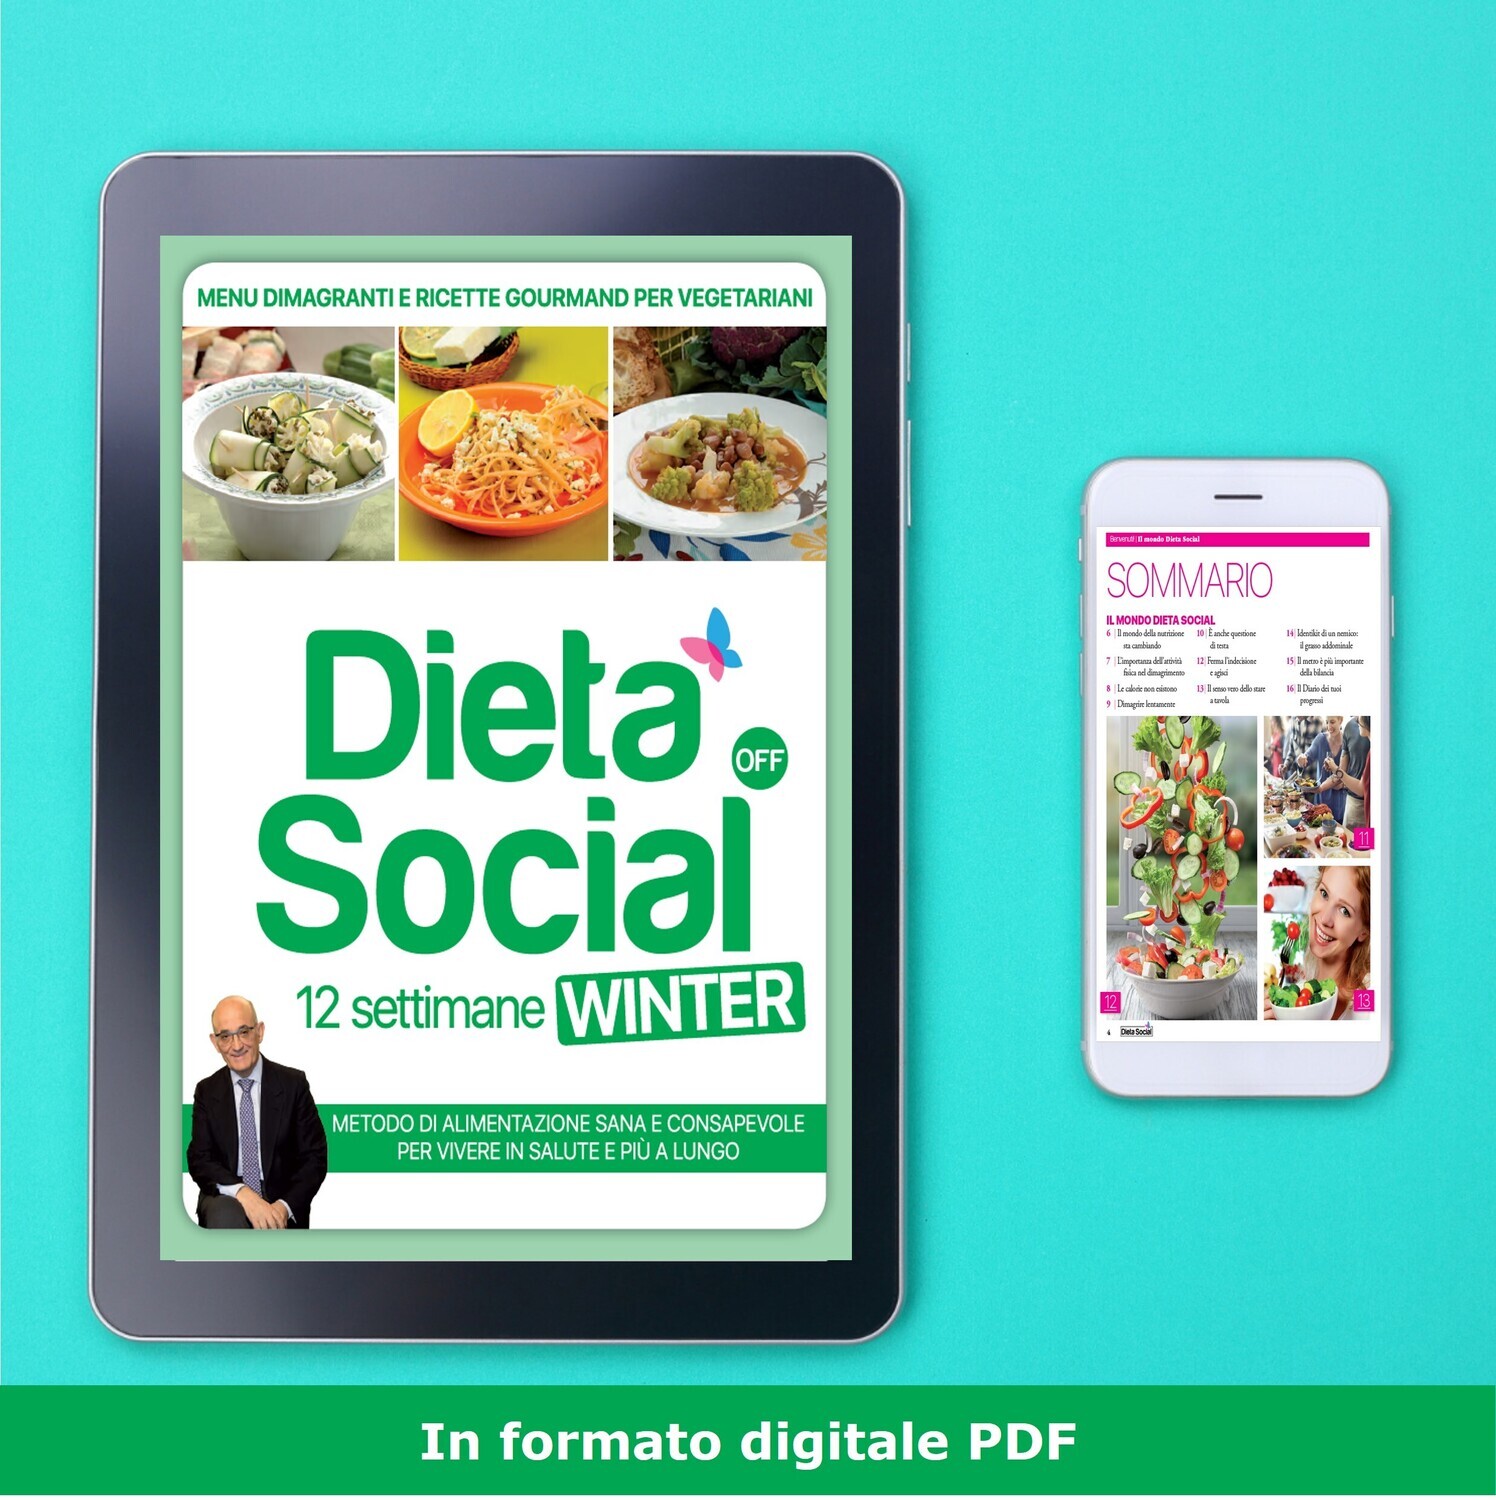 Dieta Social OFF Winter (Inverno) - Vegetariani (prima edizione)